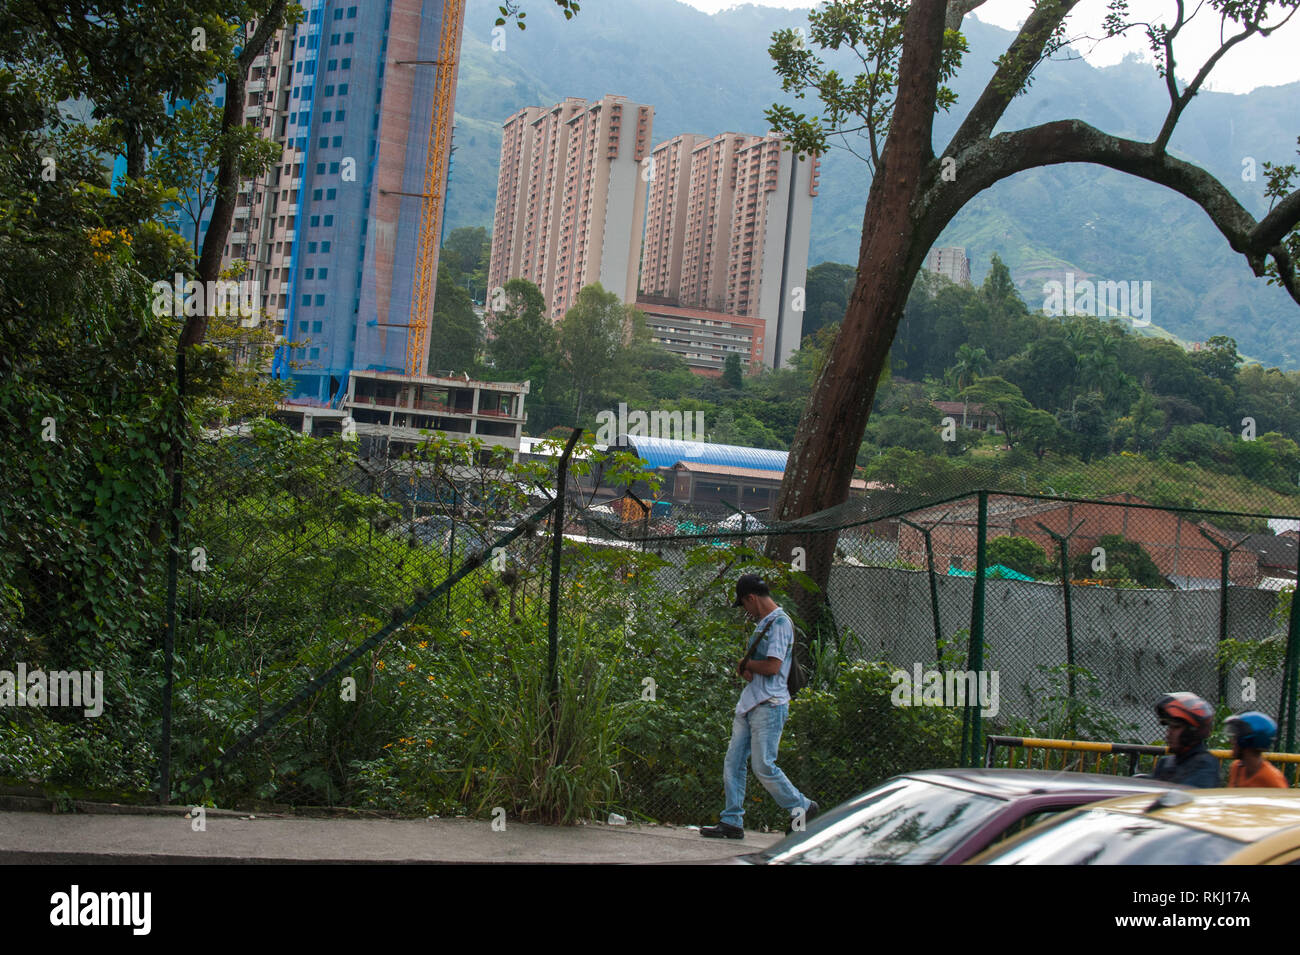 Bello, Antioquia, Colombia: Urban landscape. Stock Photo